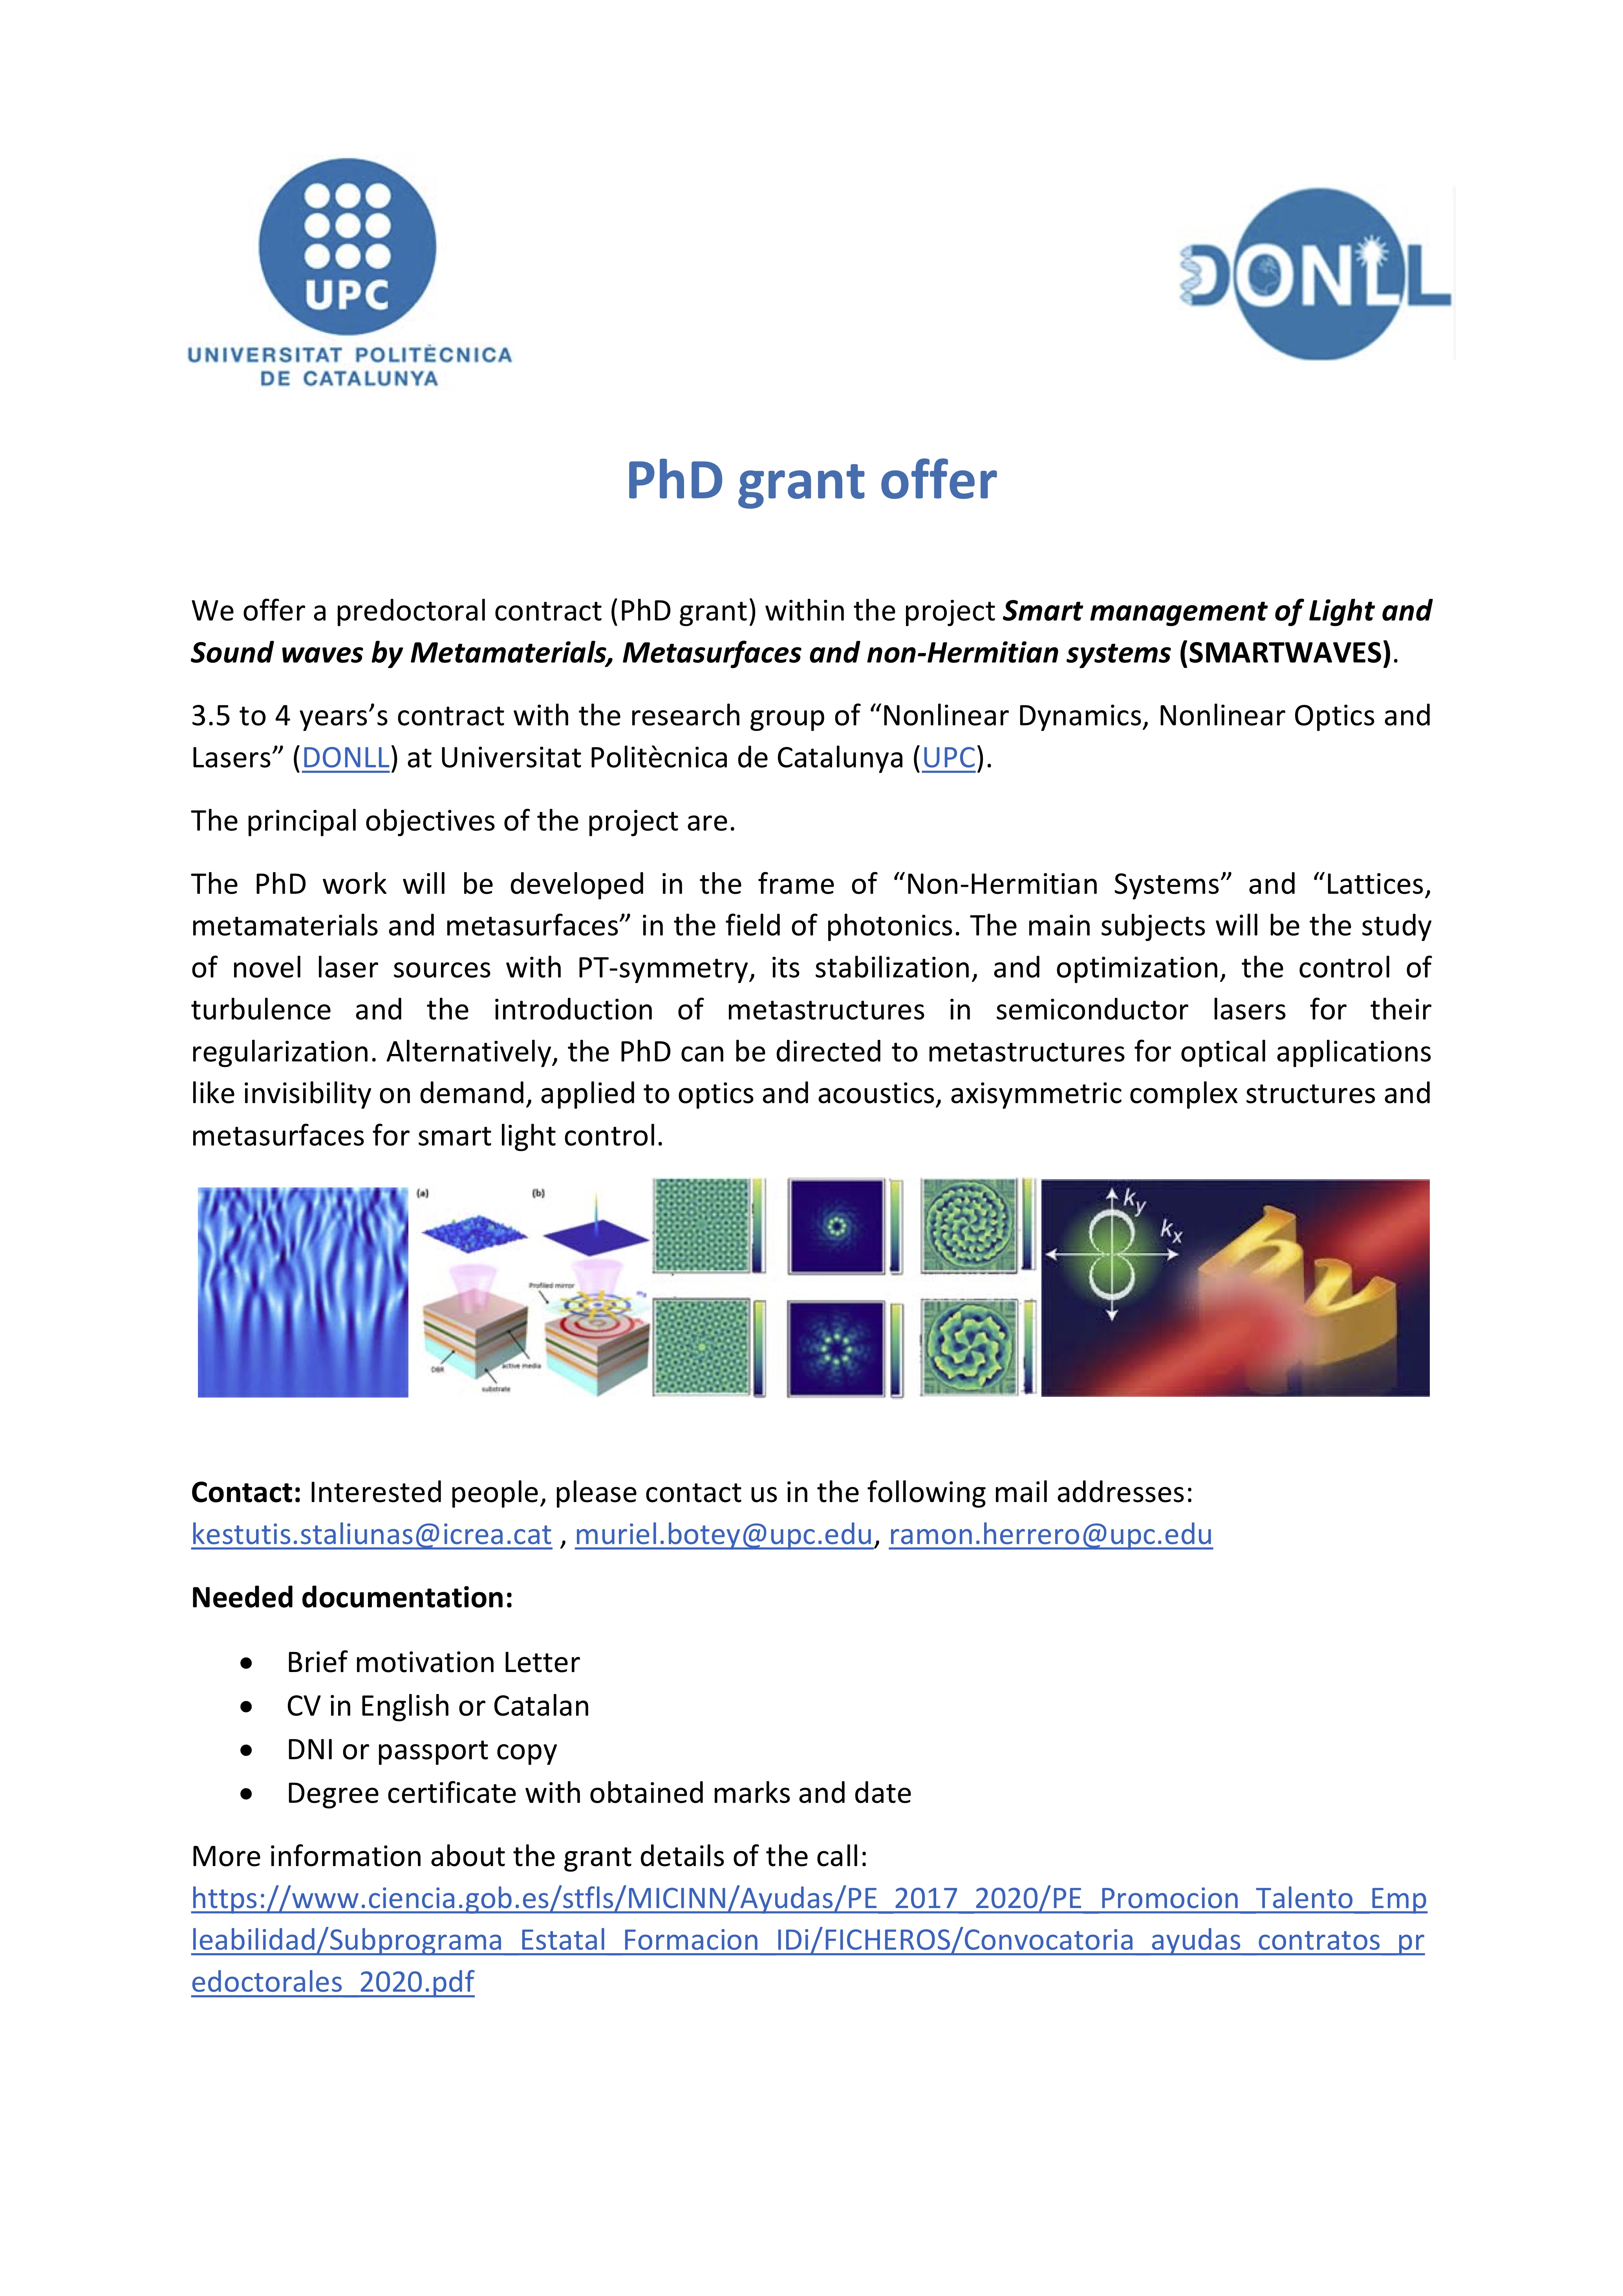 PhD Grant Offer